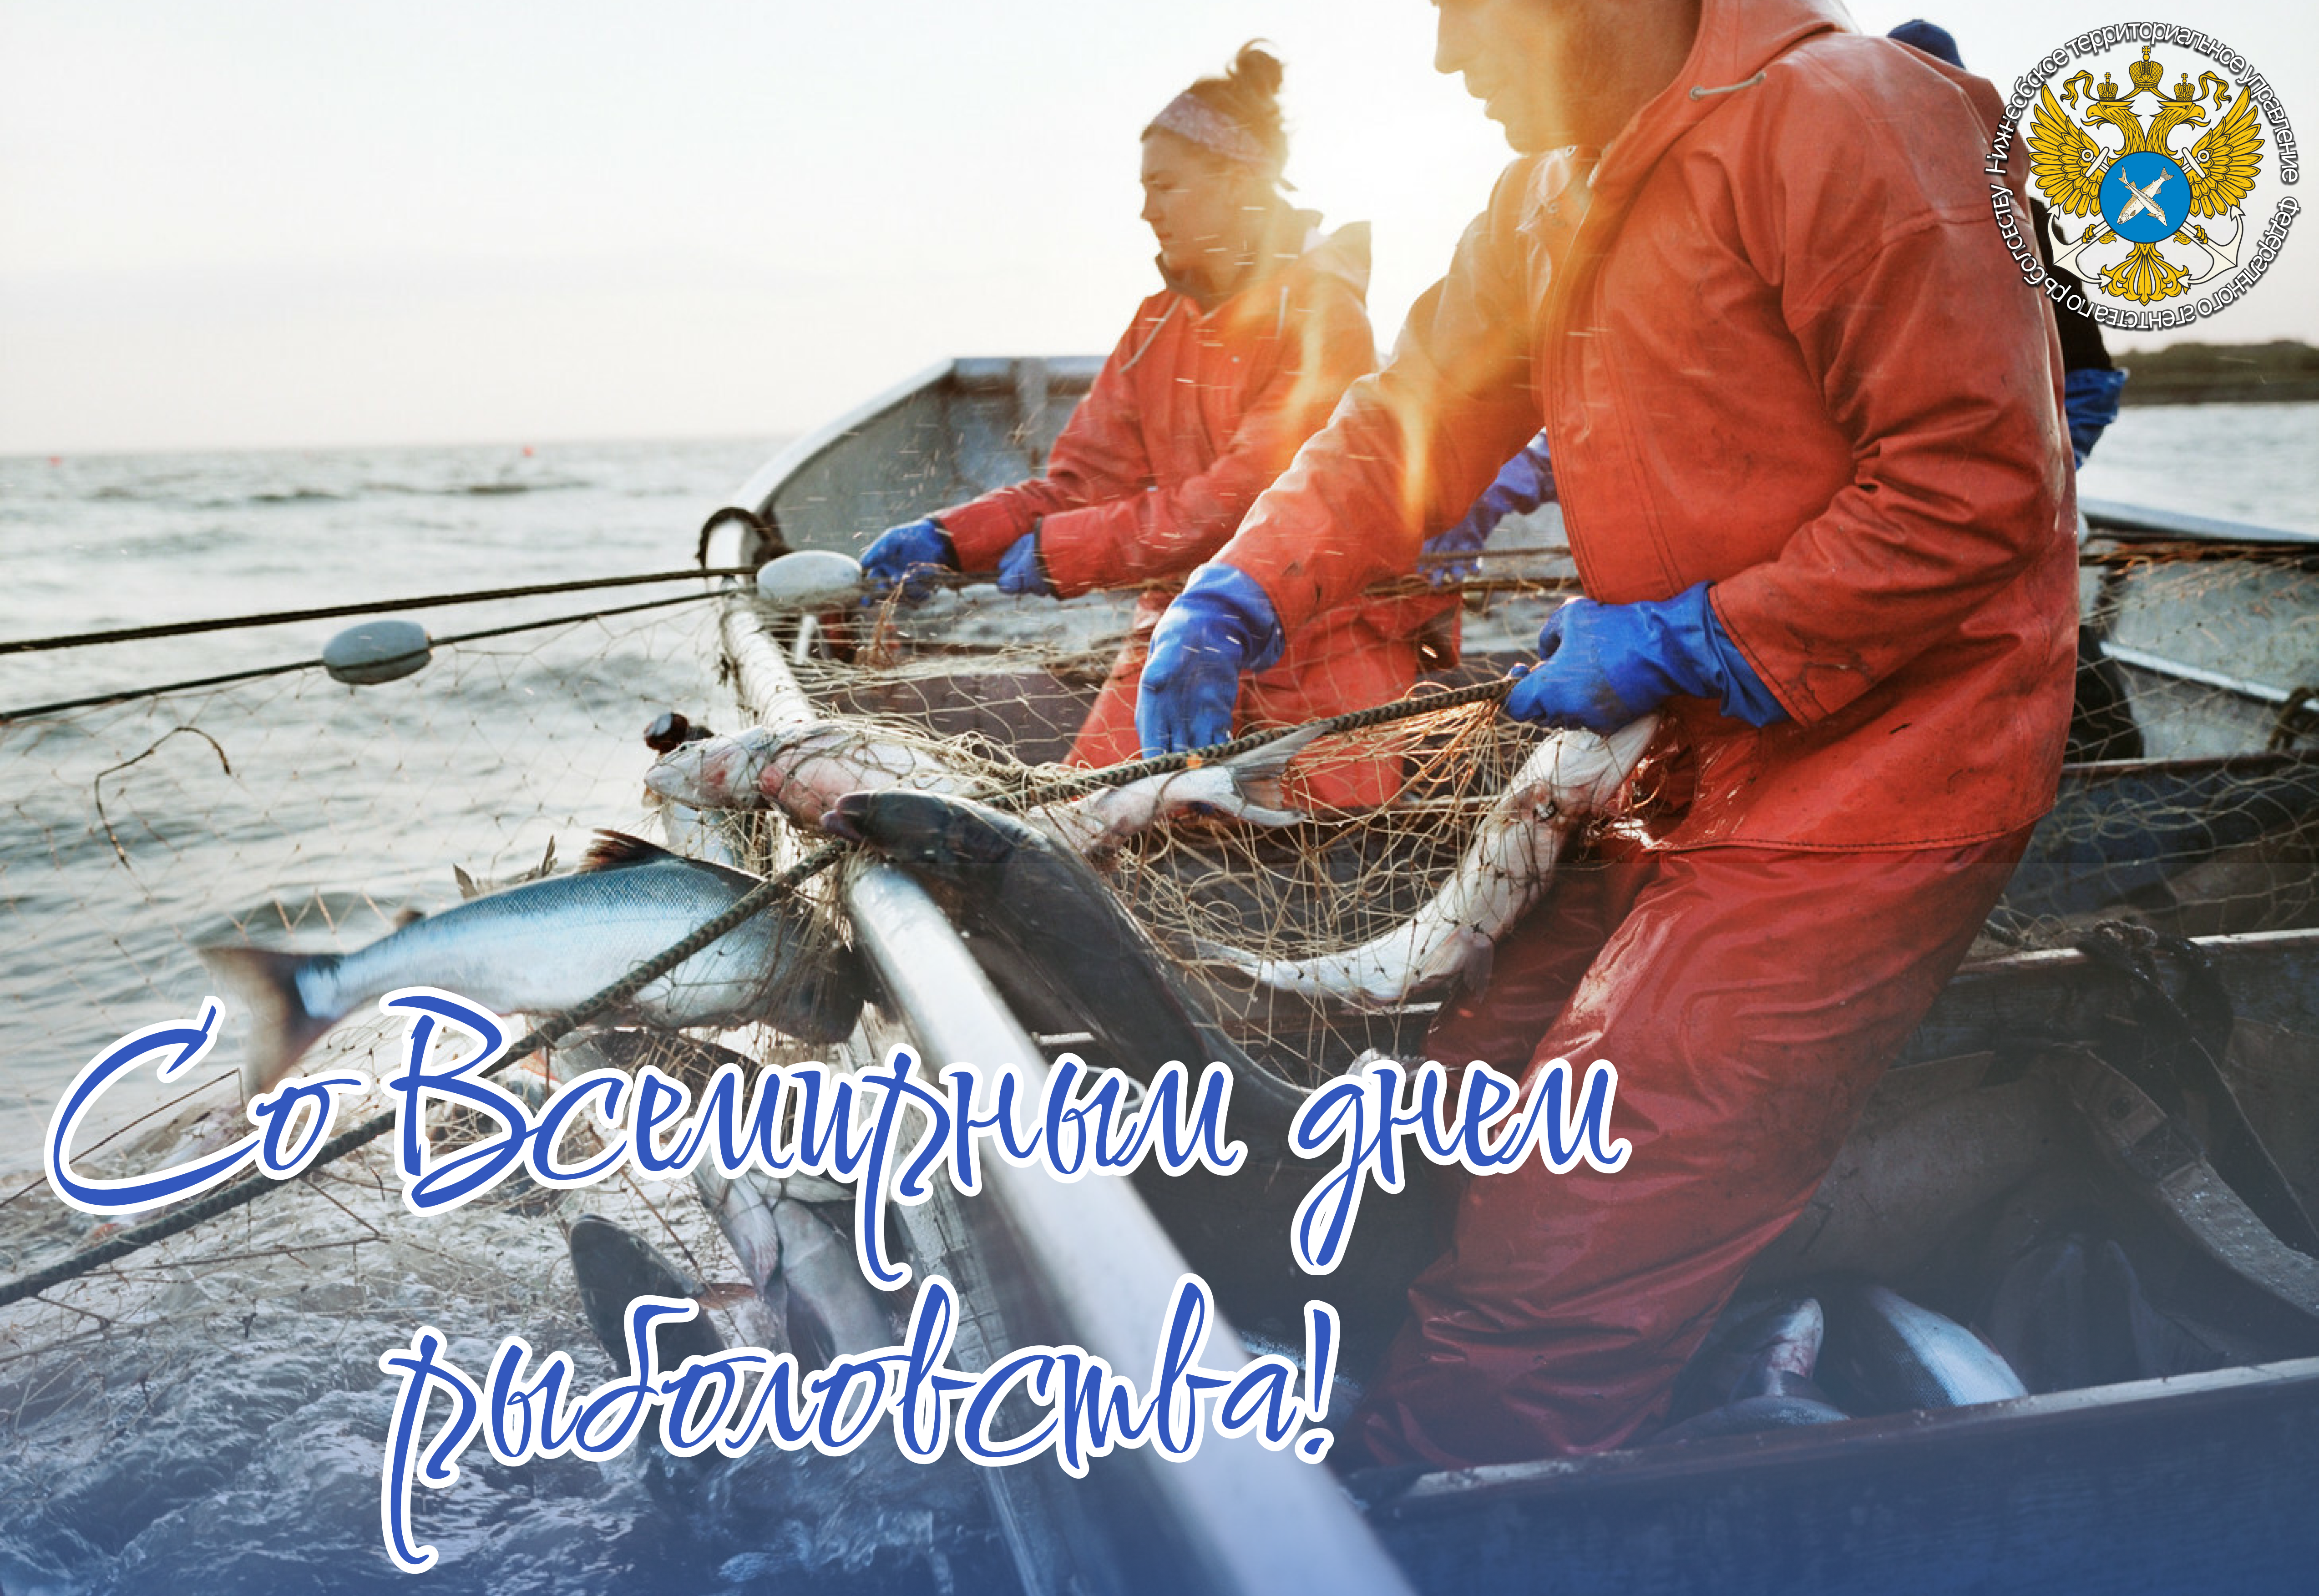 Со Всемирным днем рыболовства!